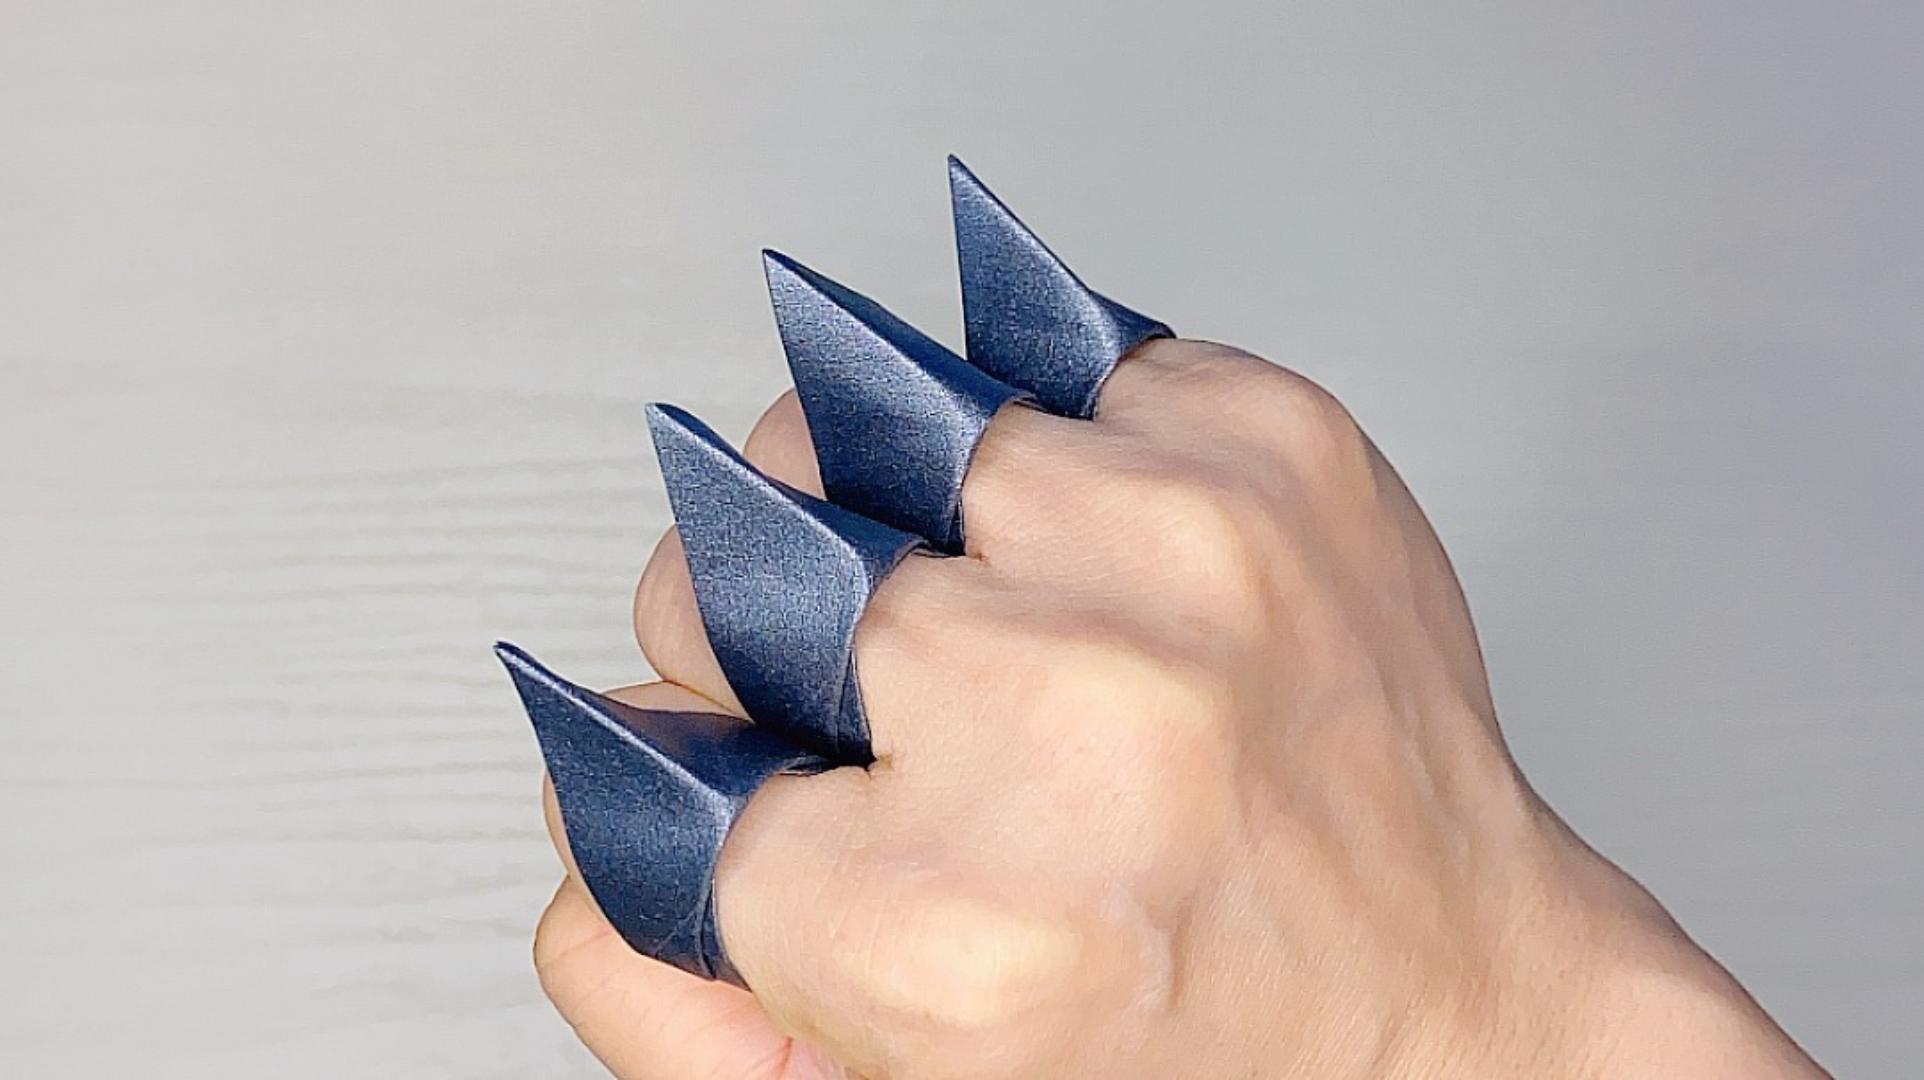 折纸爪子刀武器图片